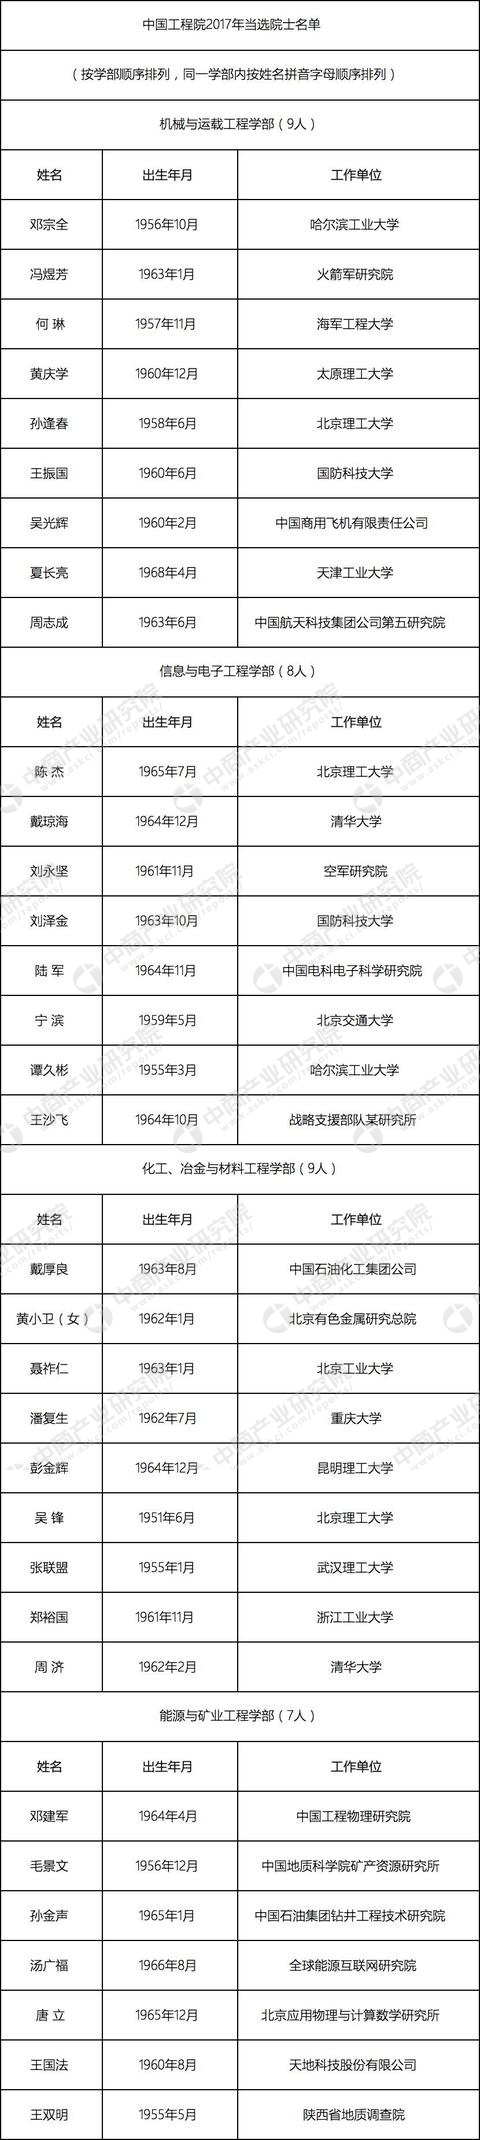 2017年中國高校新增工程院院士名單出爐，哈工大依然很強！